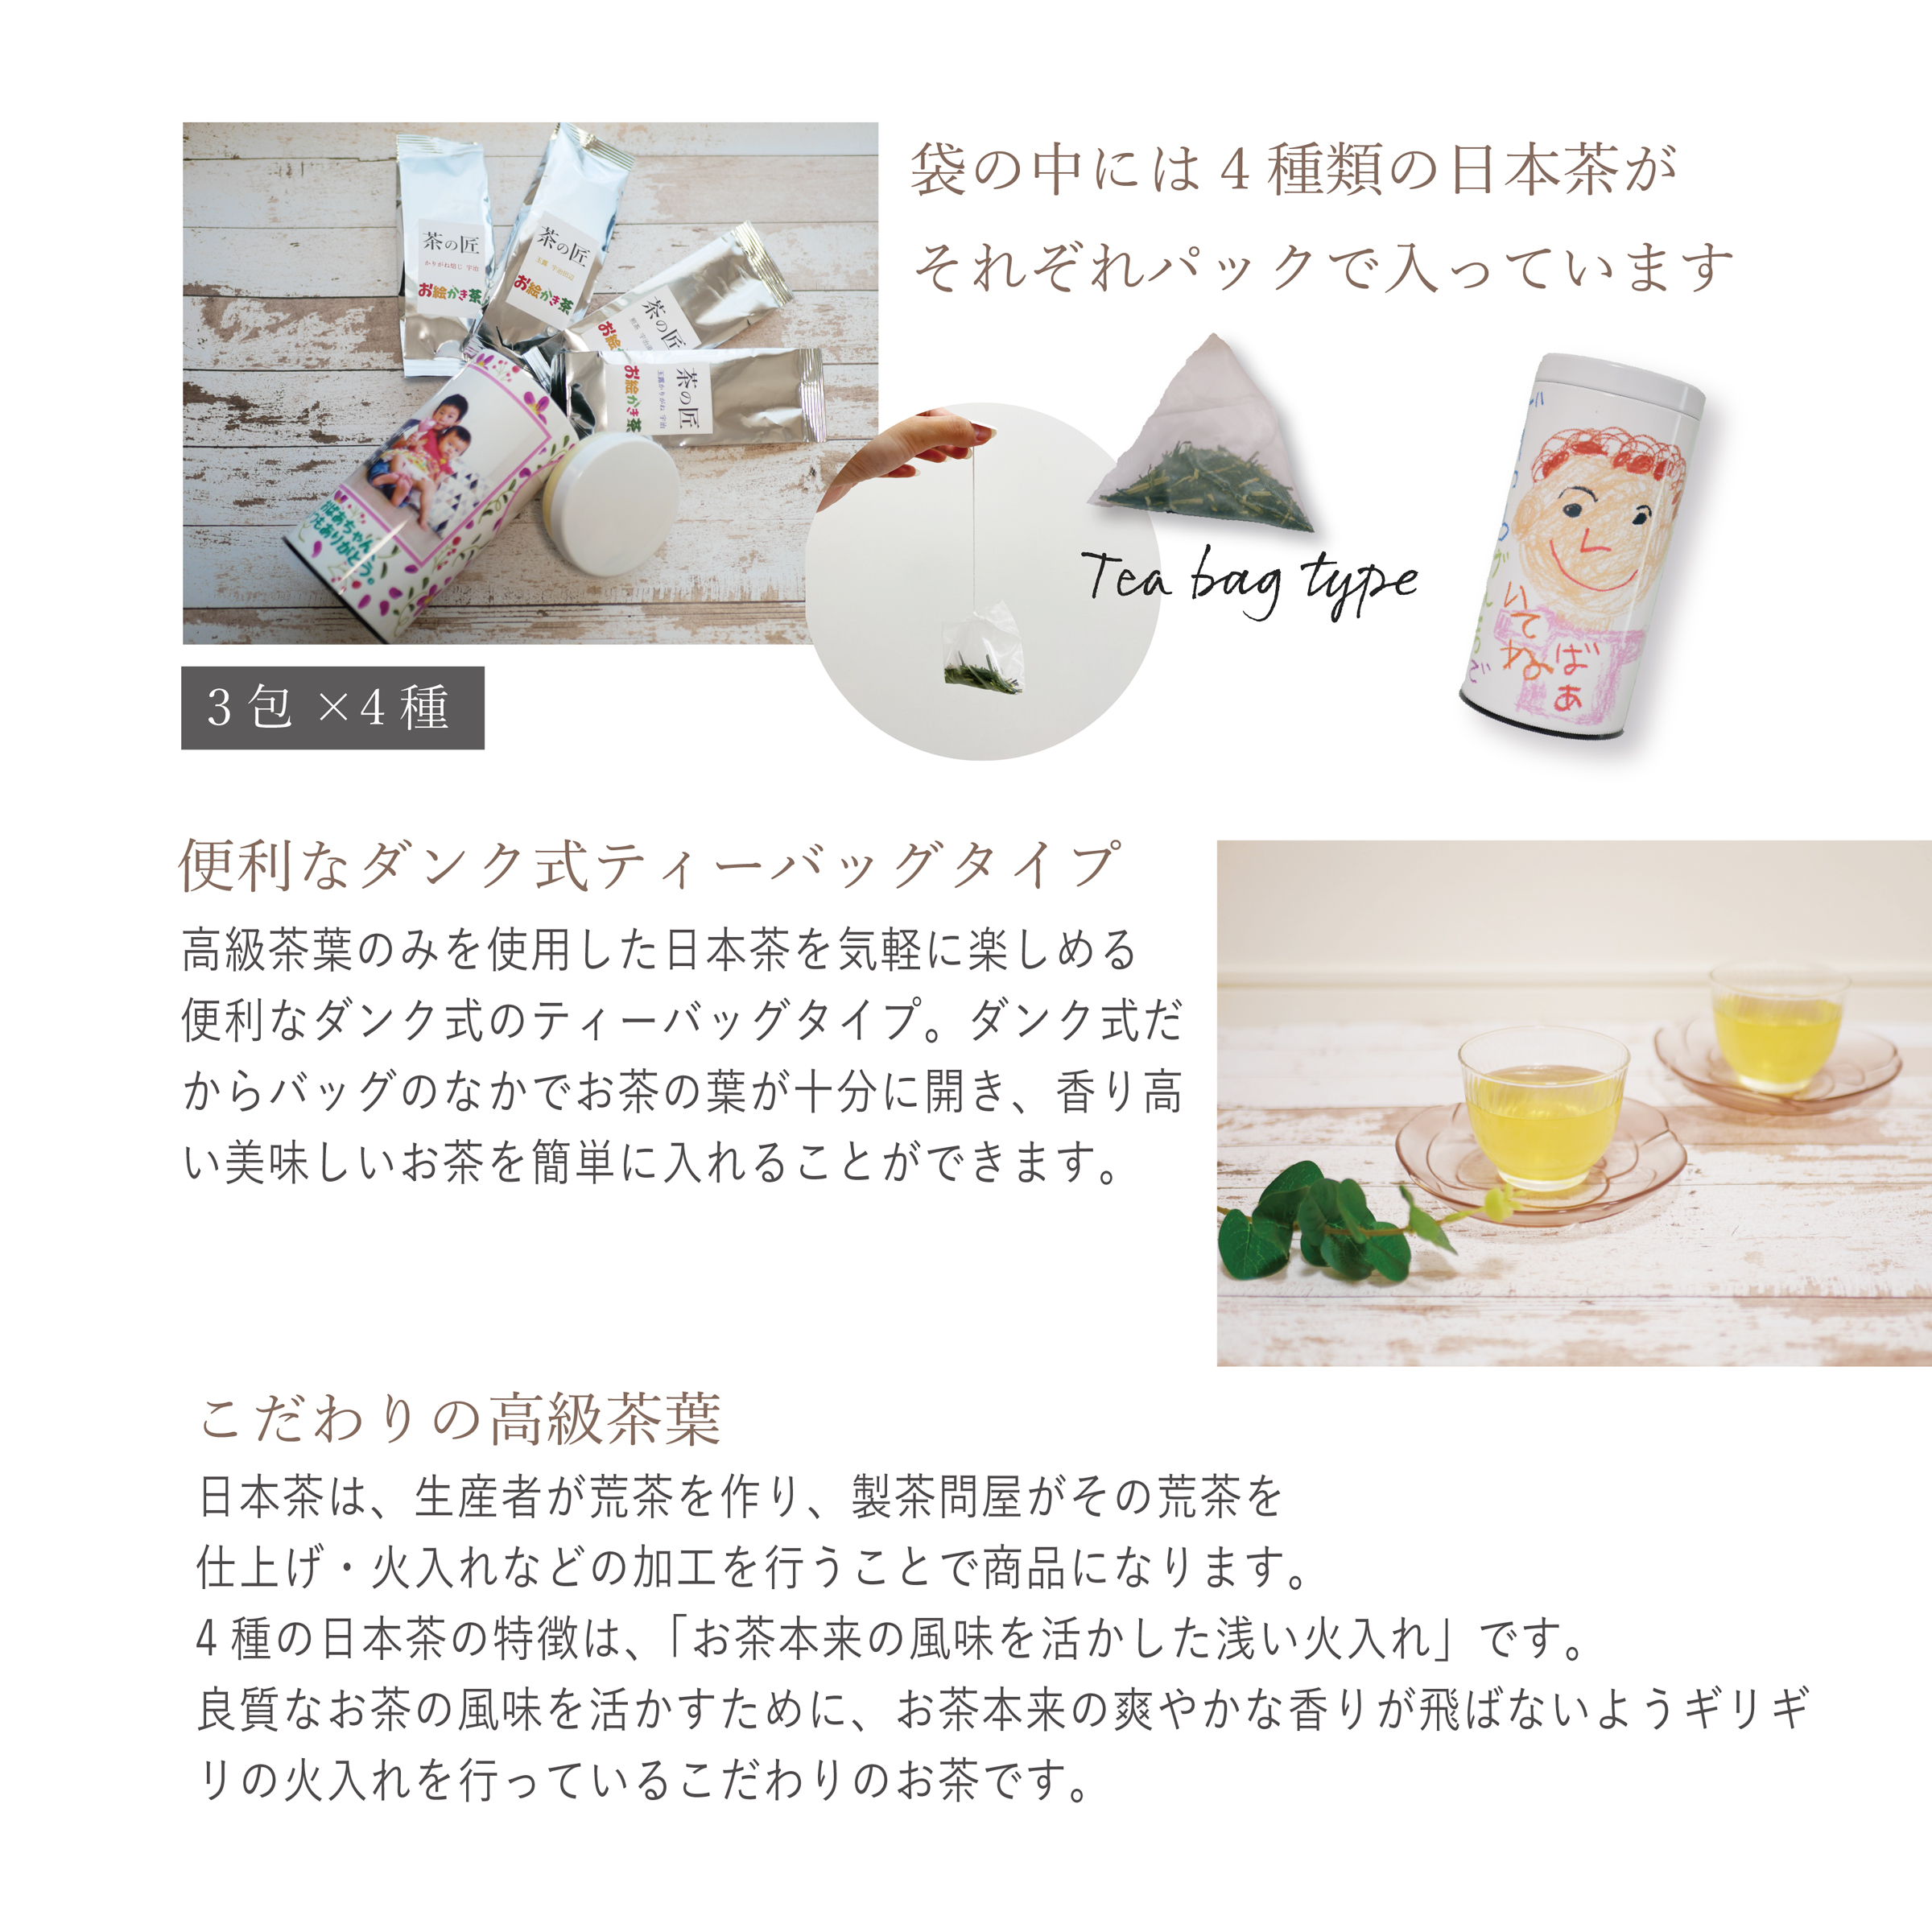 お絵かき茶<br>ペア 缶入りタイプ<br>京都宇治の日本茶セット